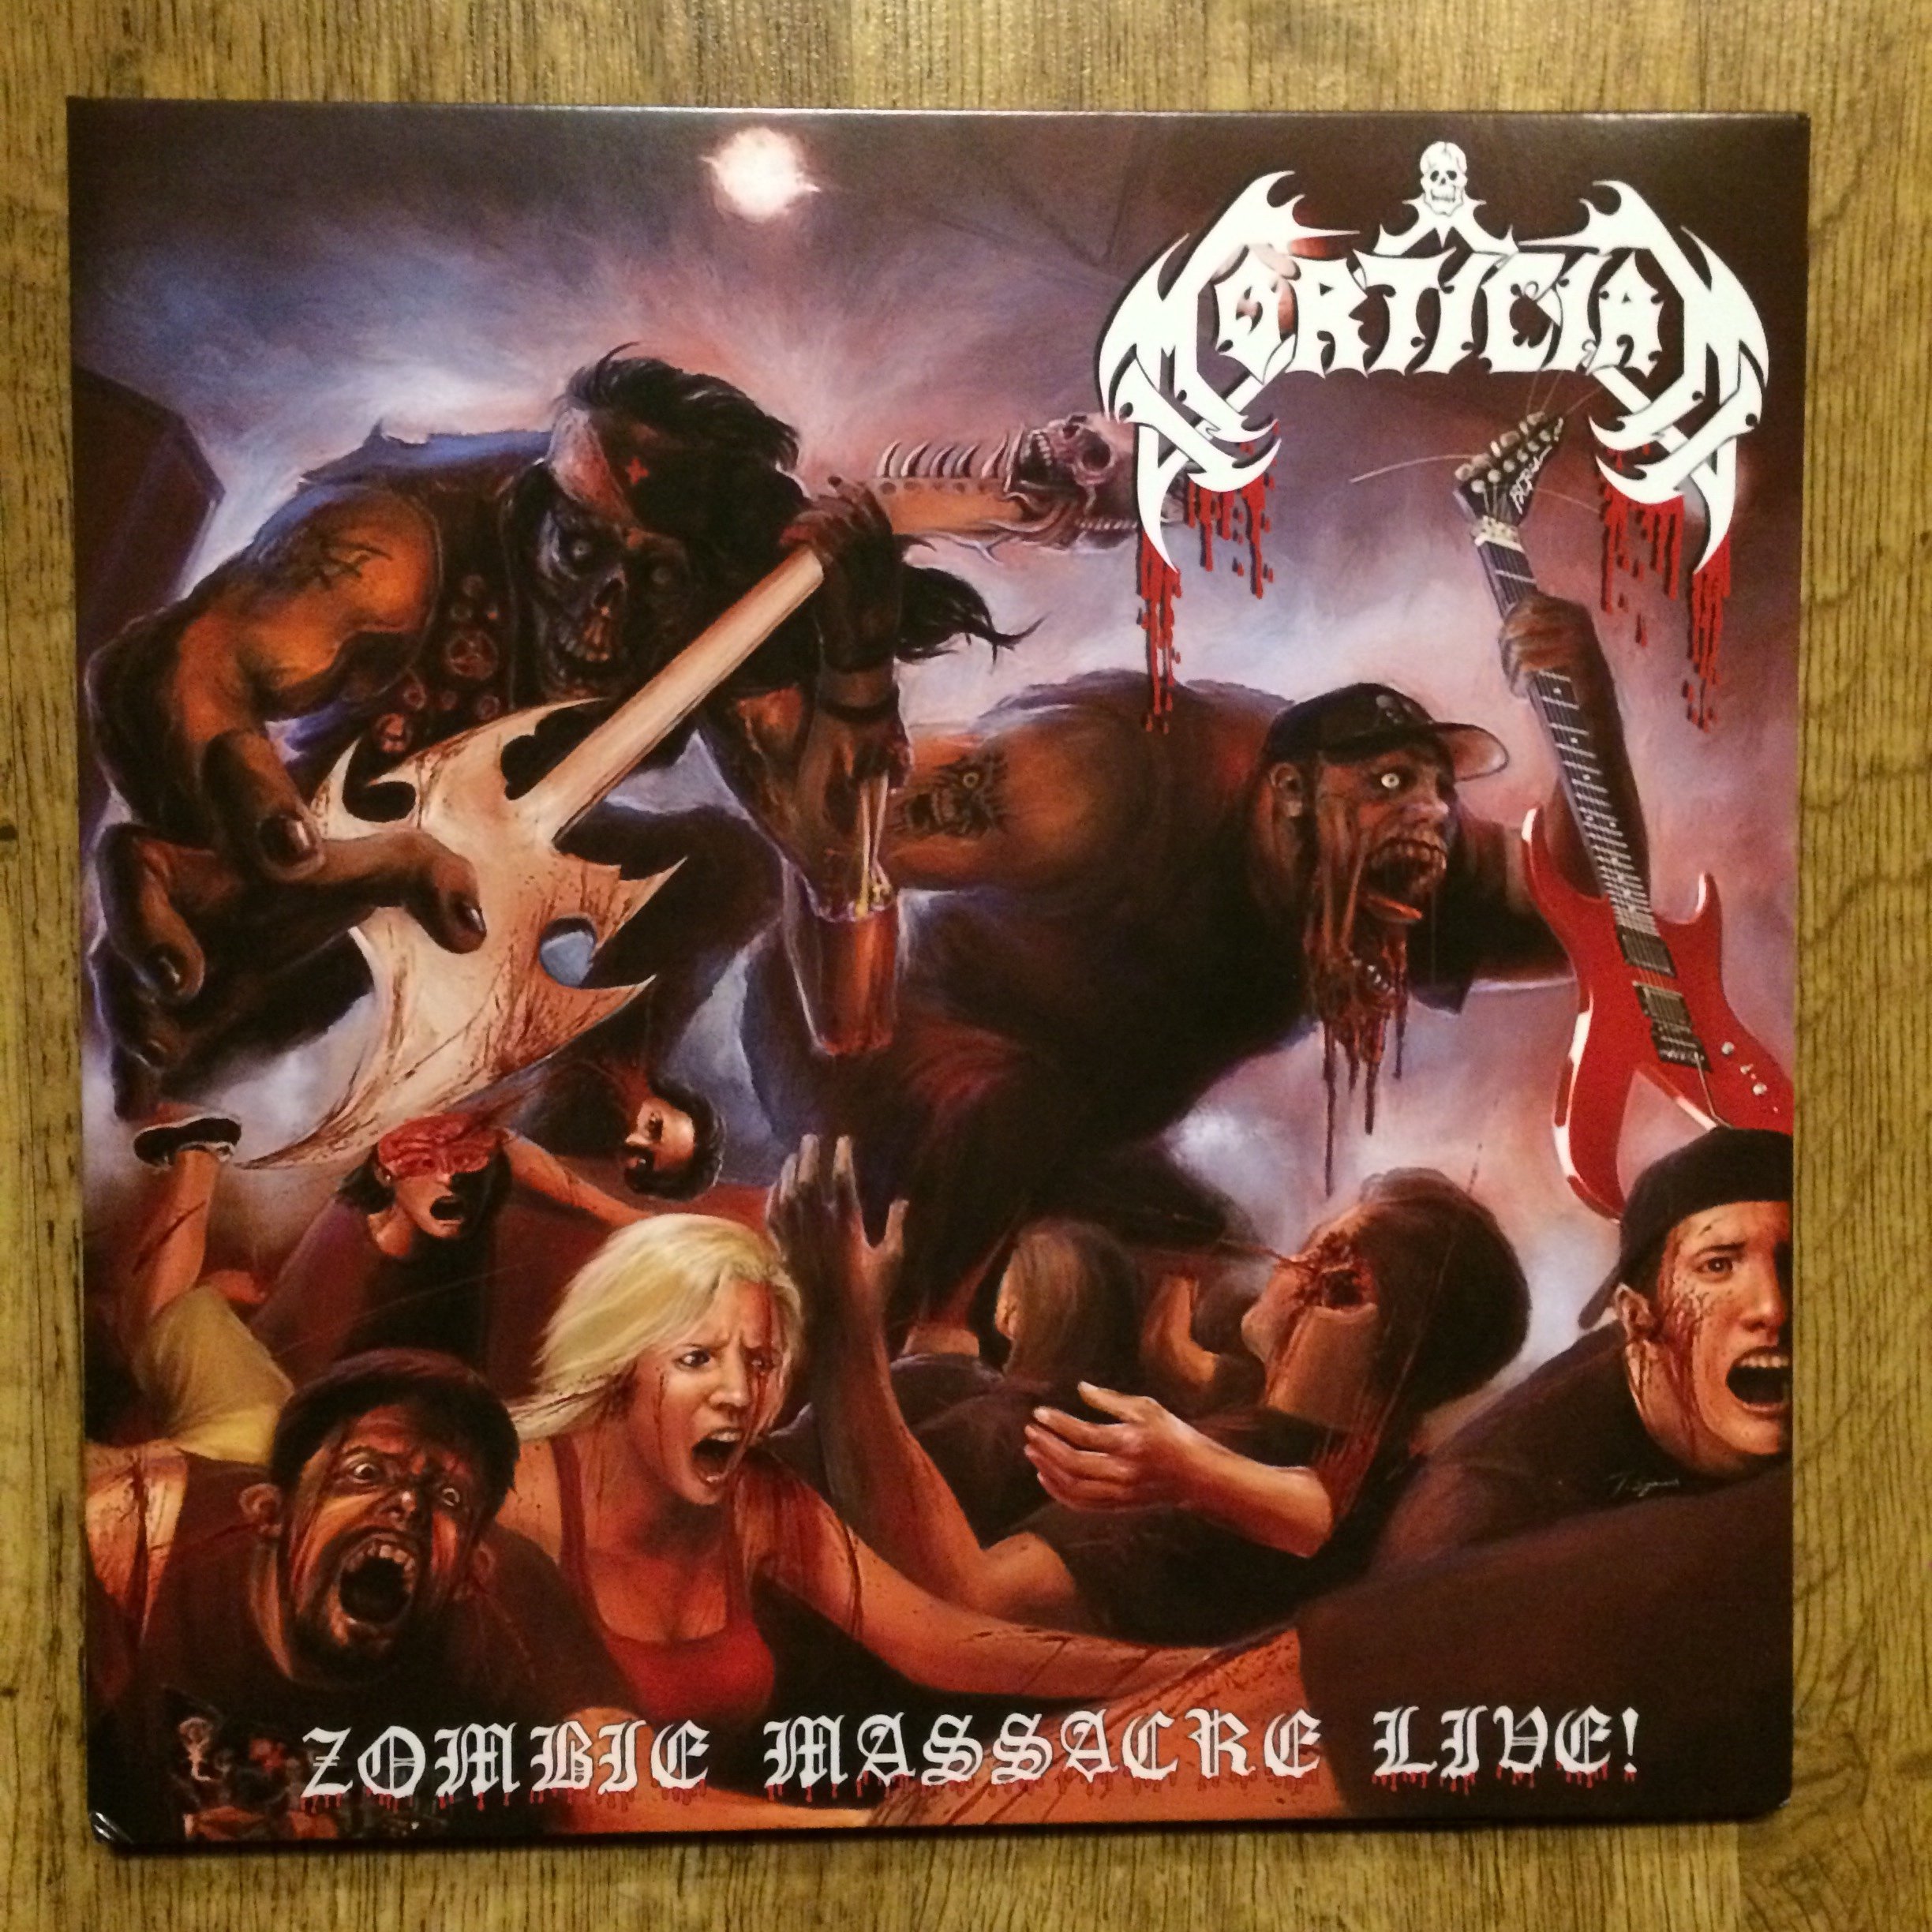 Photo of the Mortician - "Zombie Massacre Live" 2LP (Black vinyl)